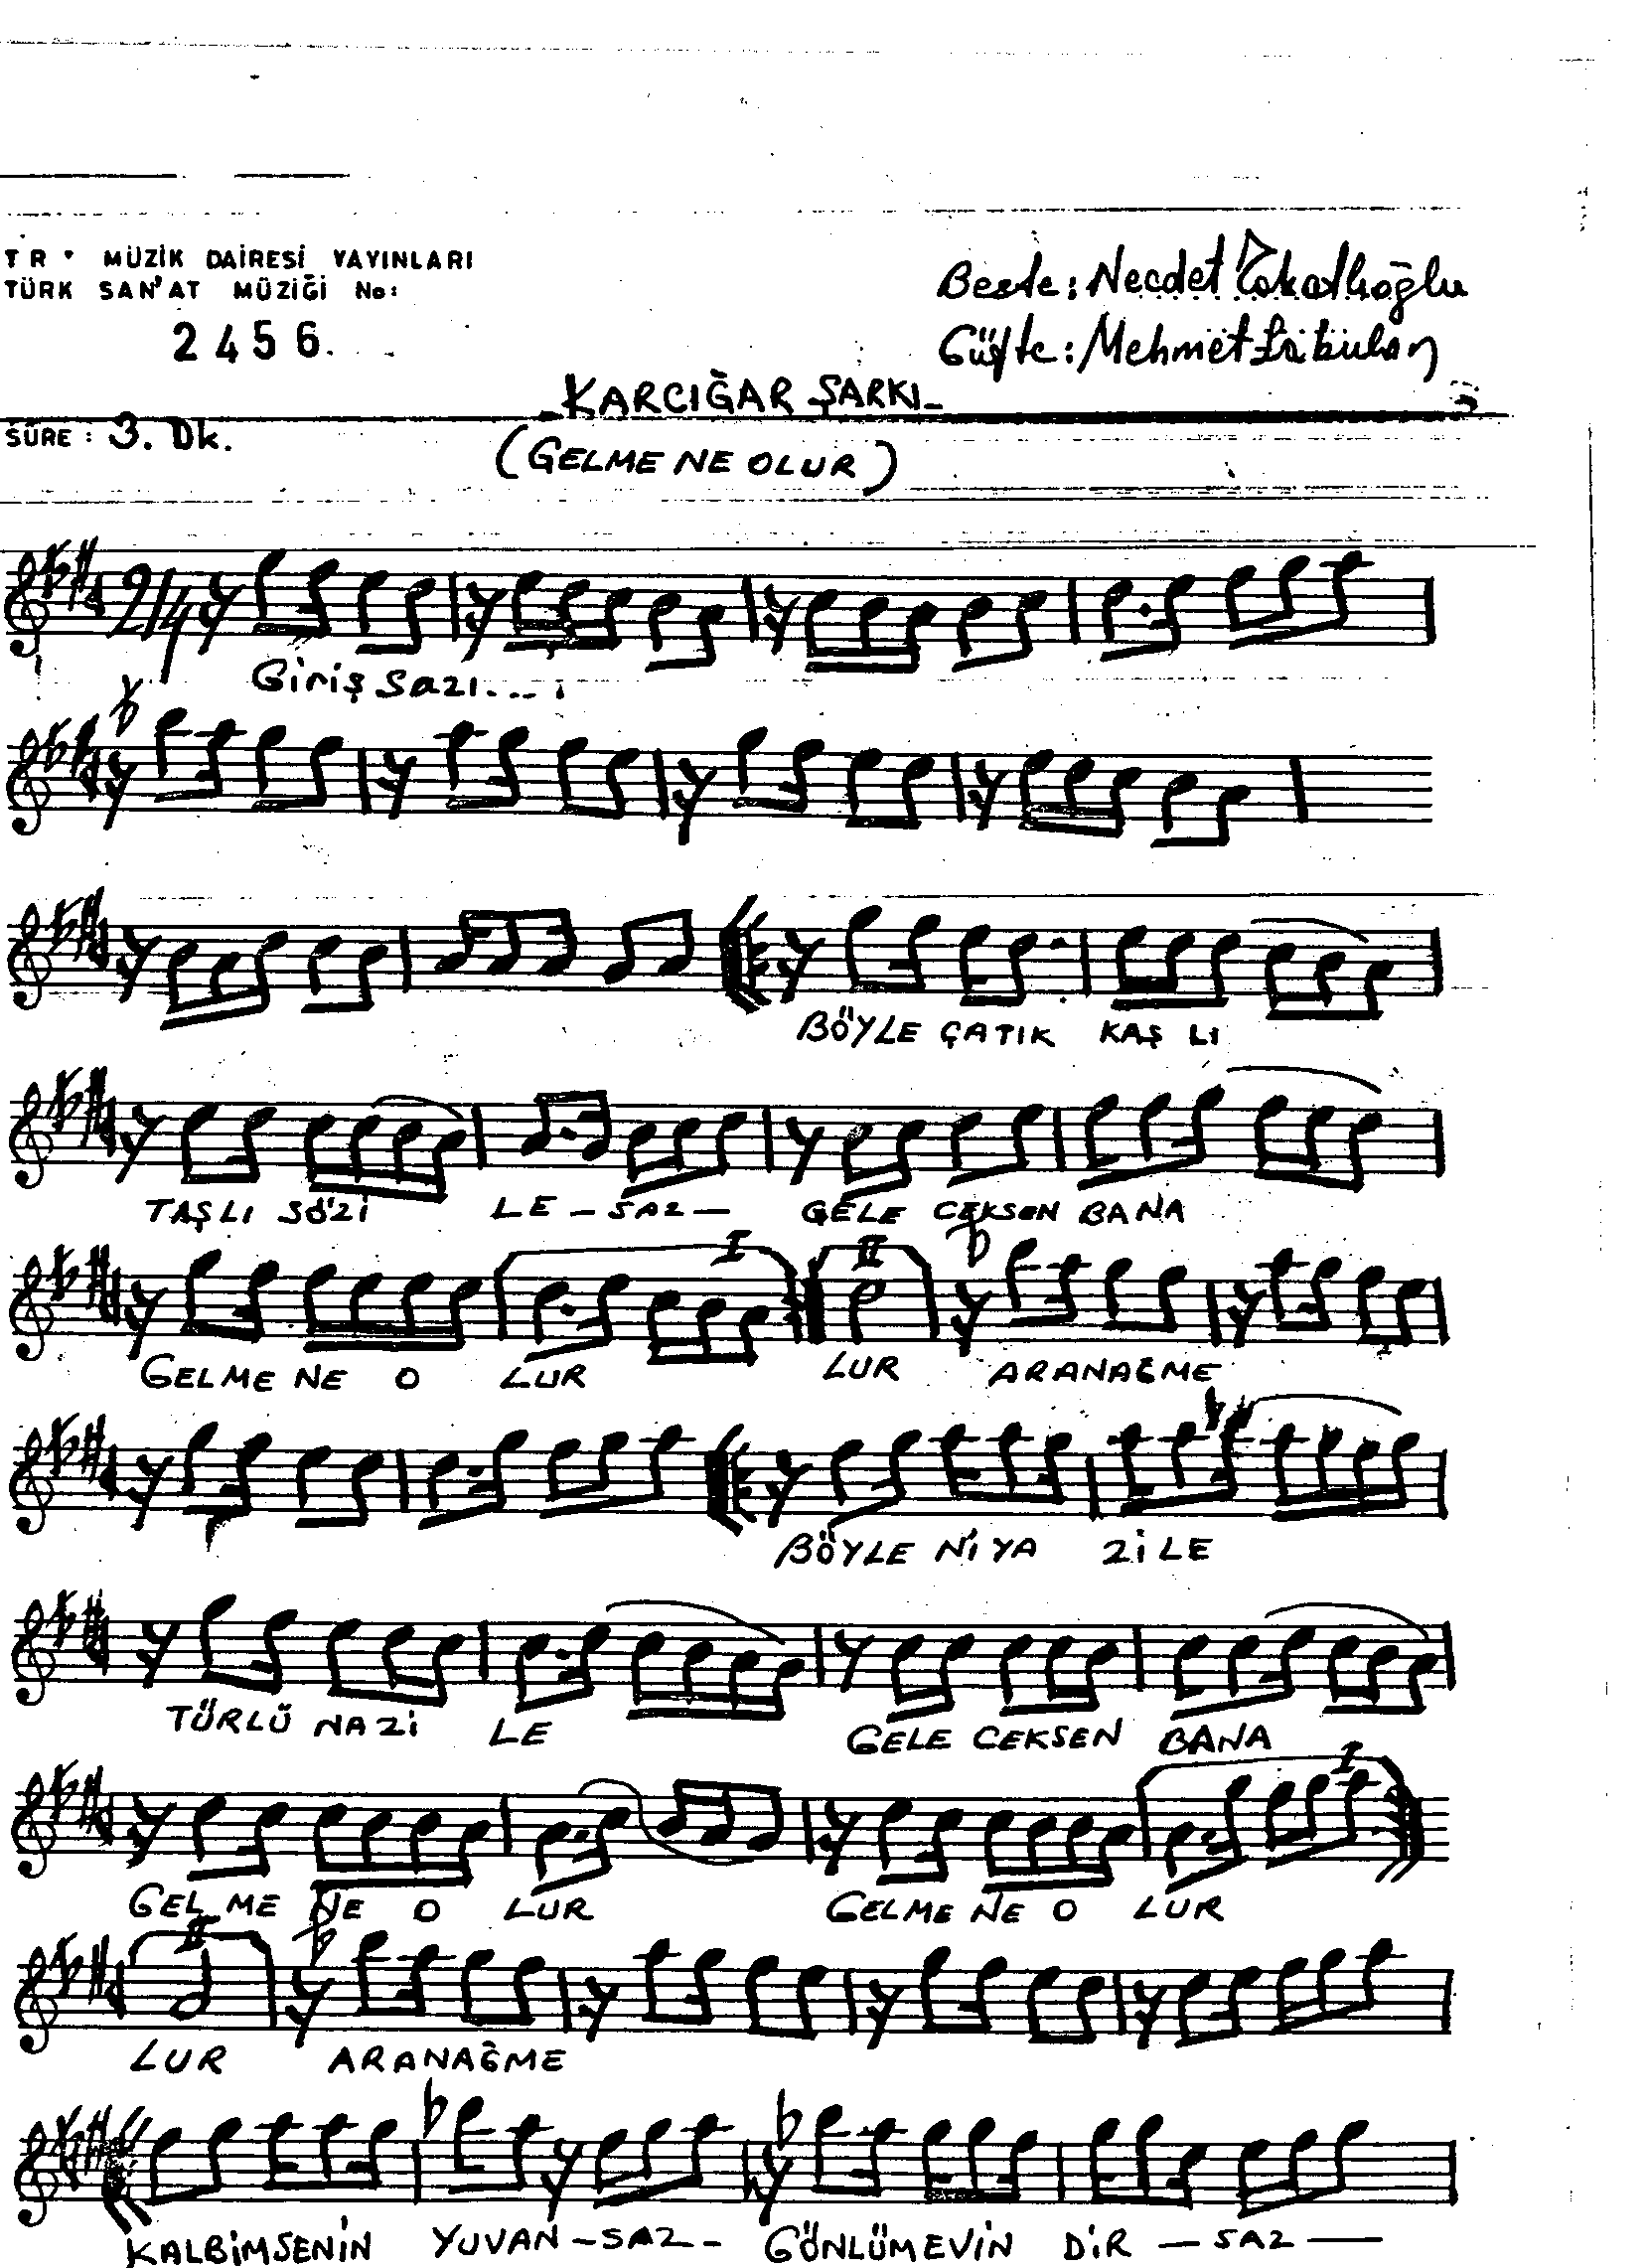 Karcığar - Şarkı - Necdet Tokatlıoğlu - Sayfa 1